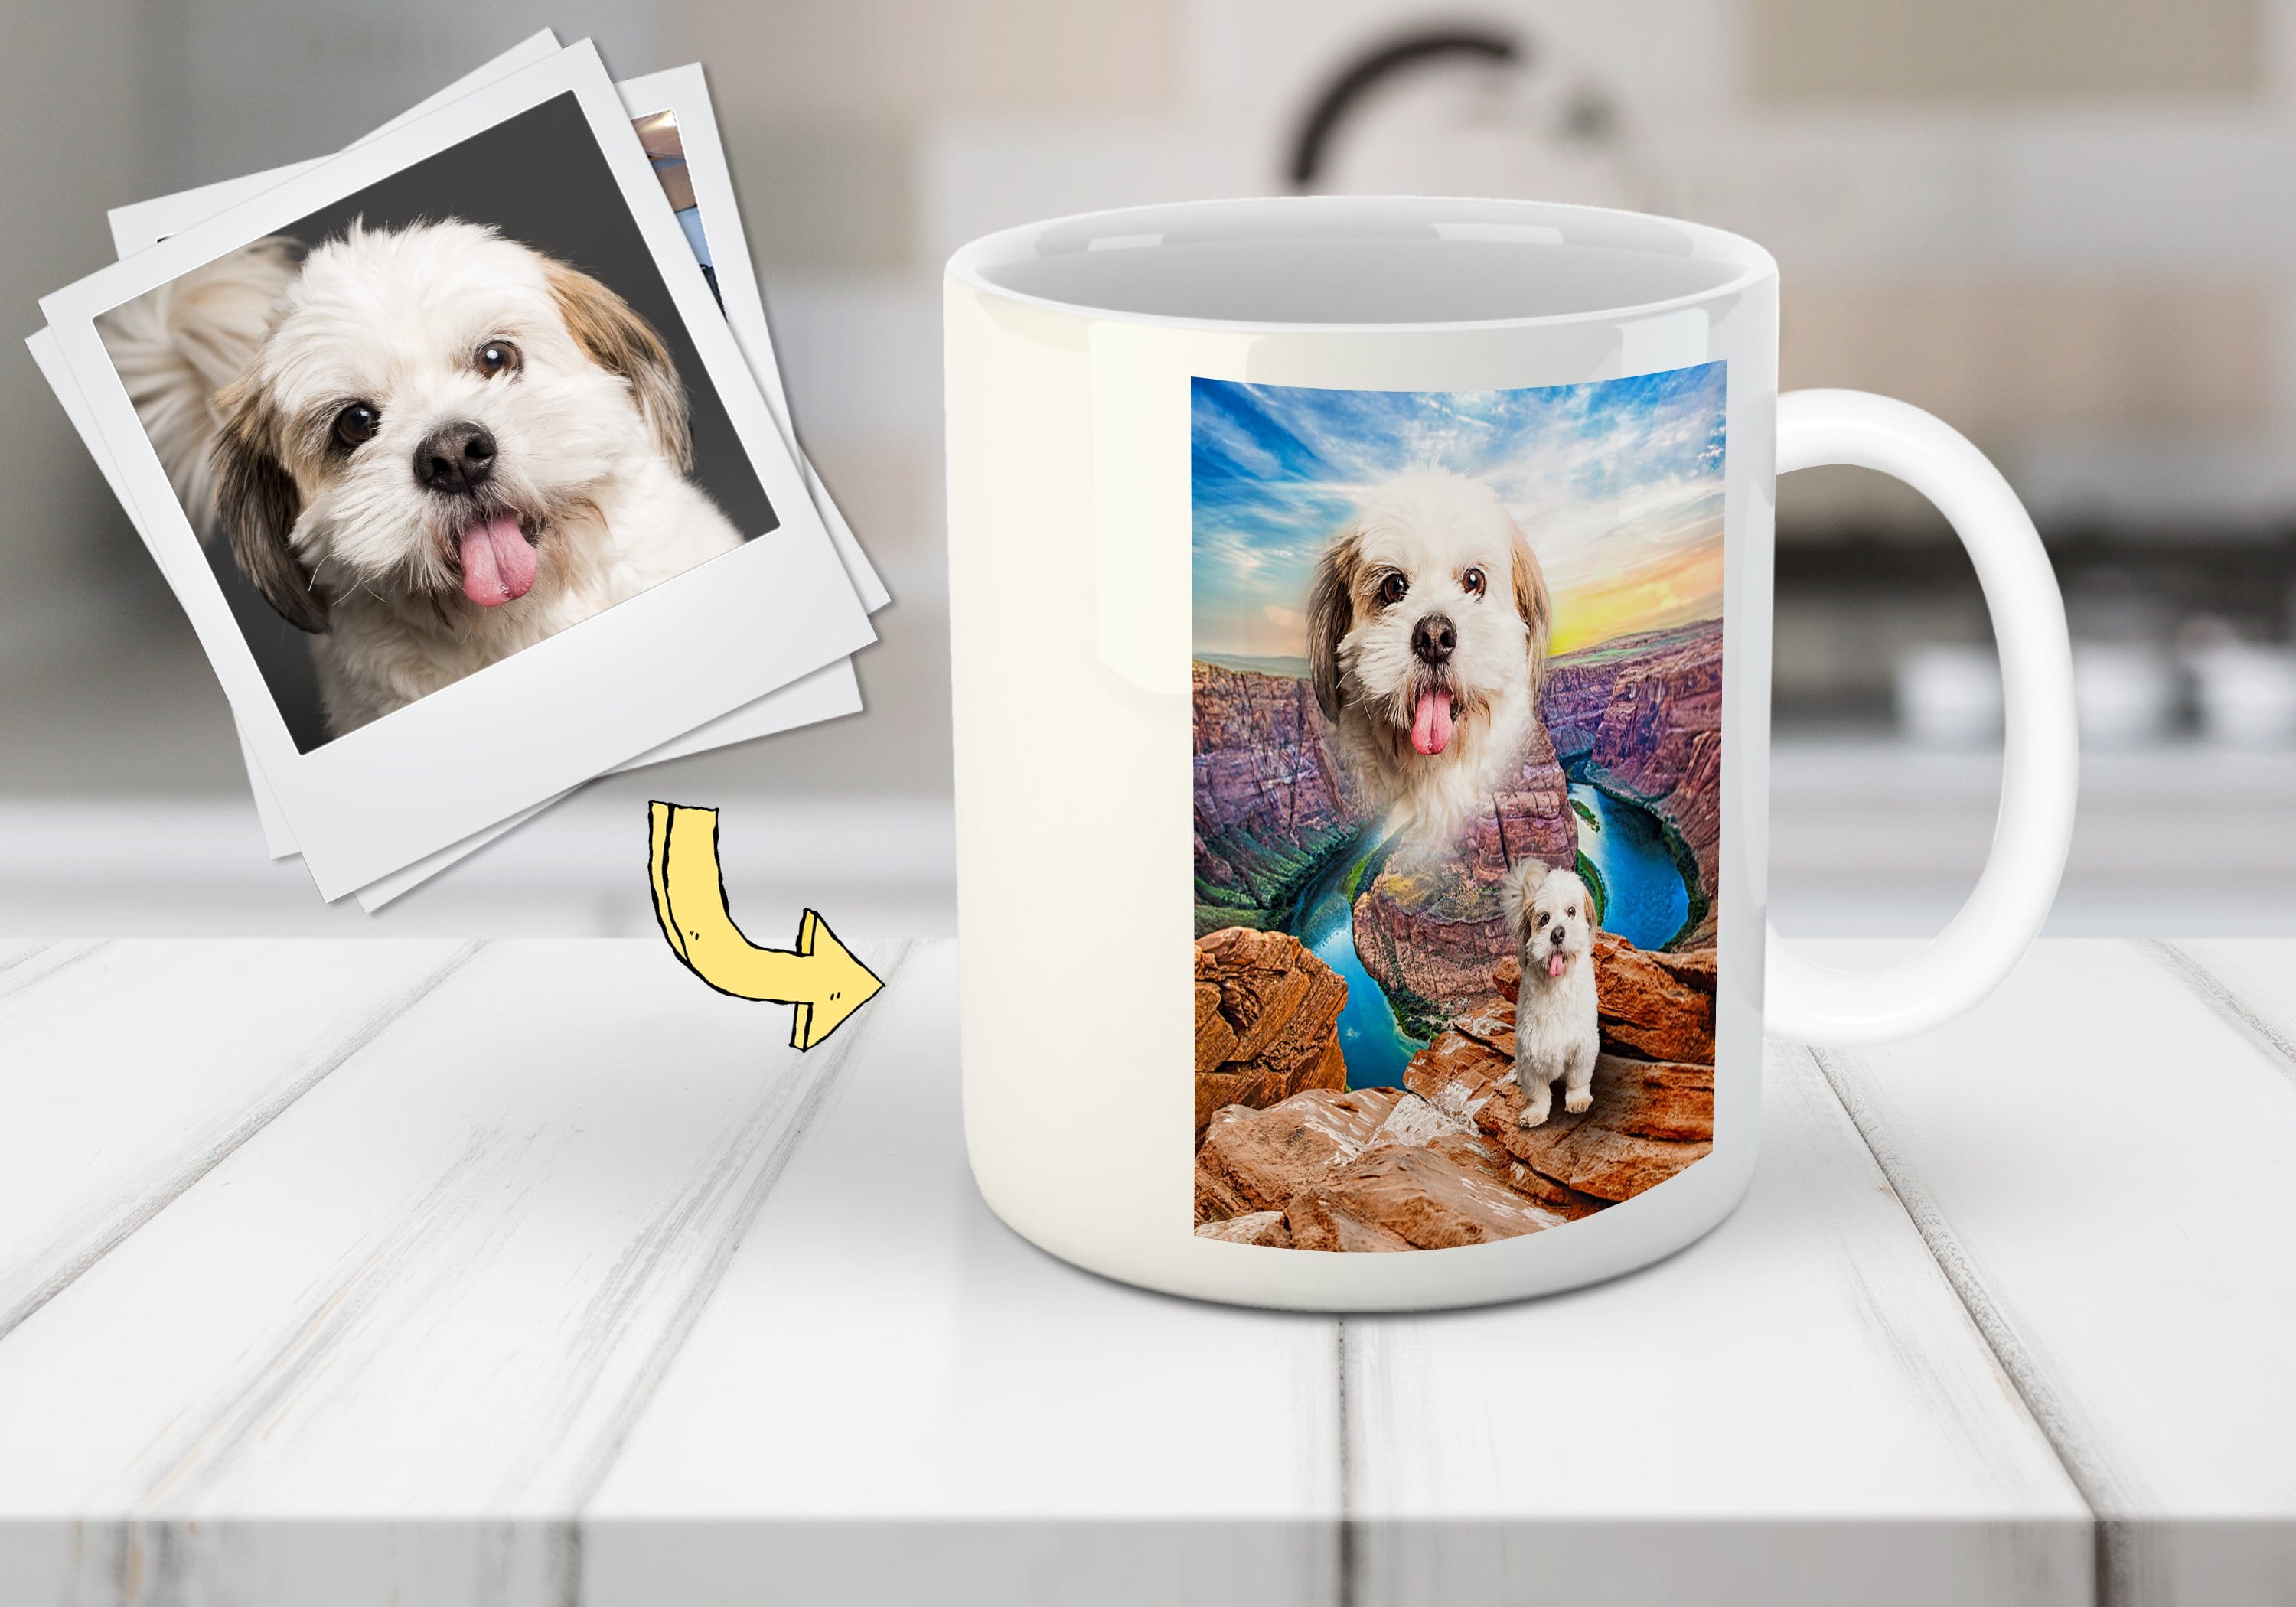 &#39;Majestic Canyon&#39; Personalized Pet Mug